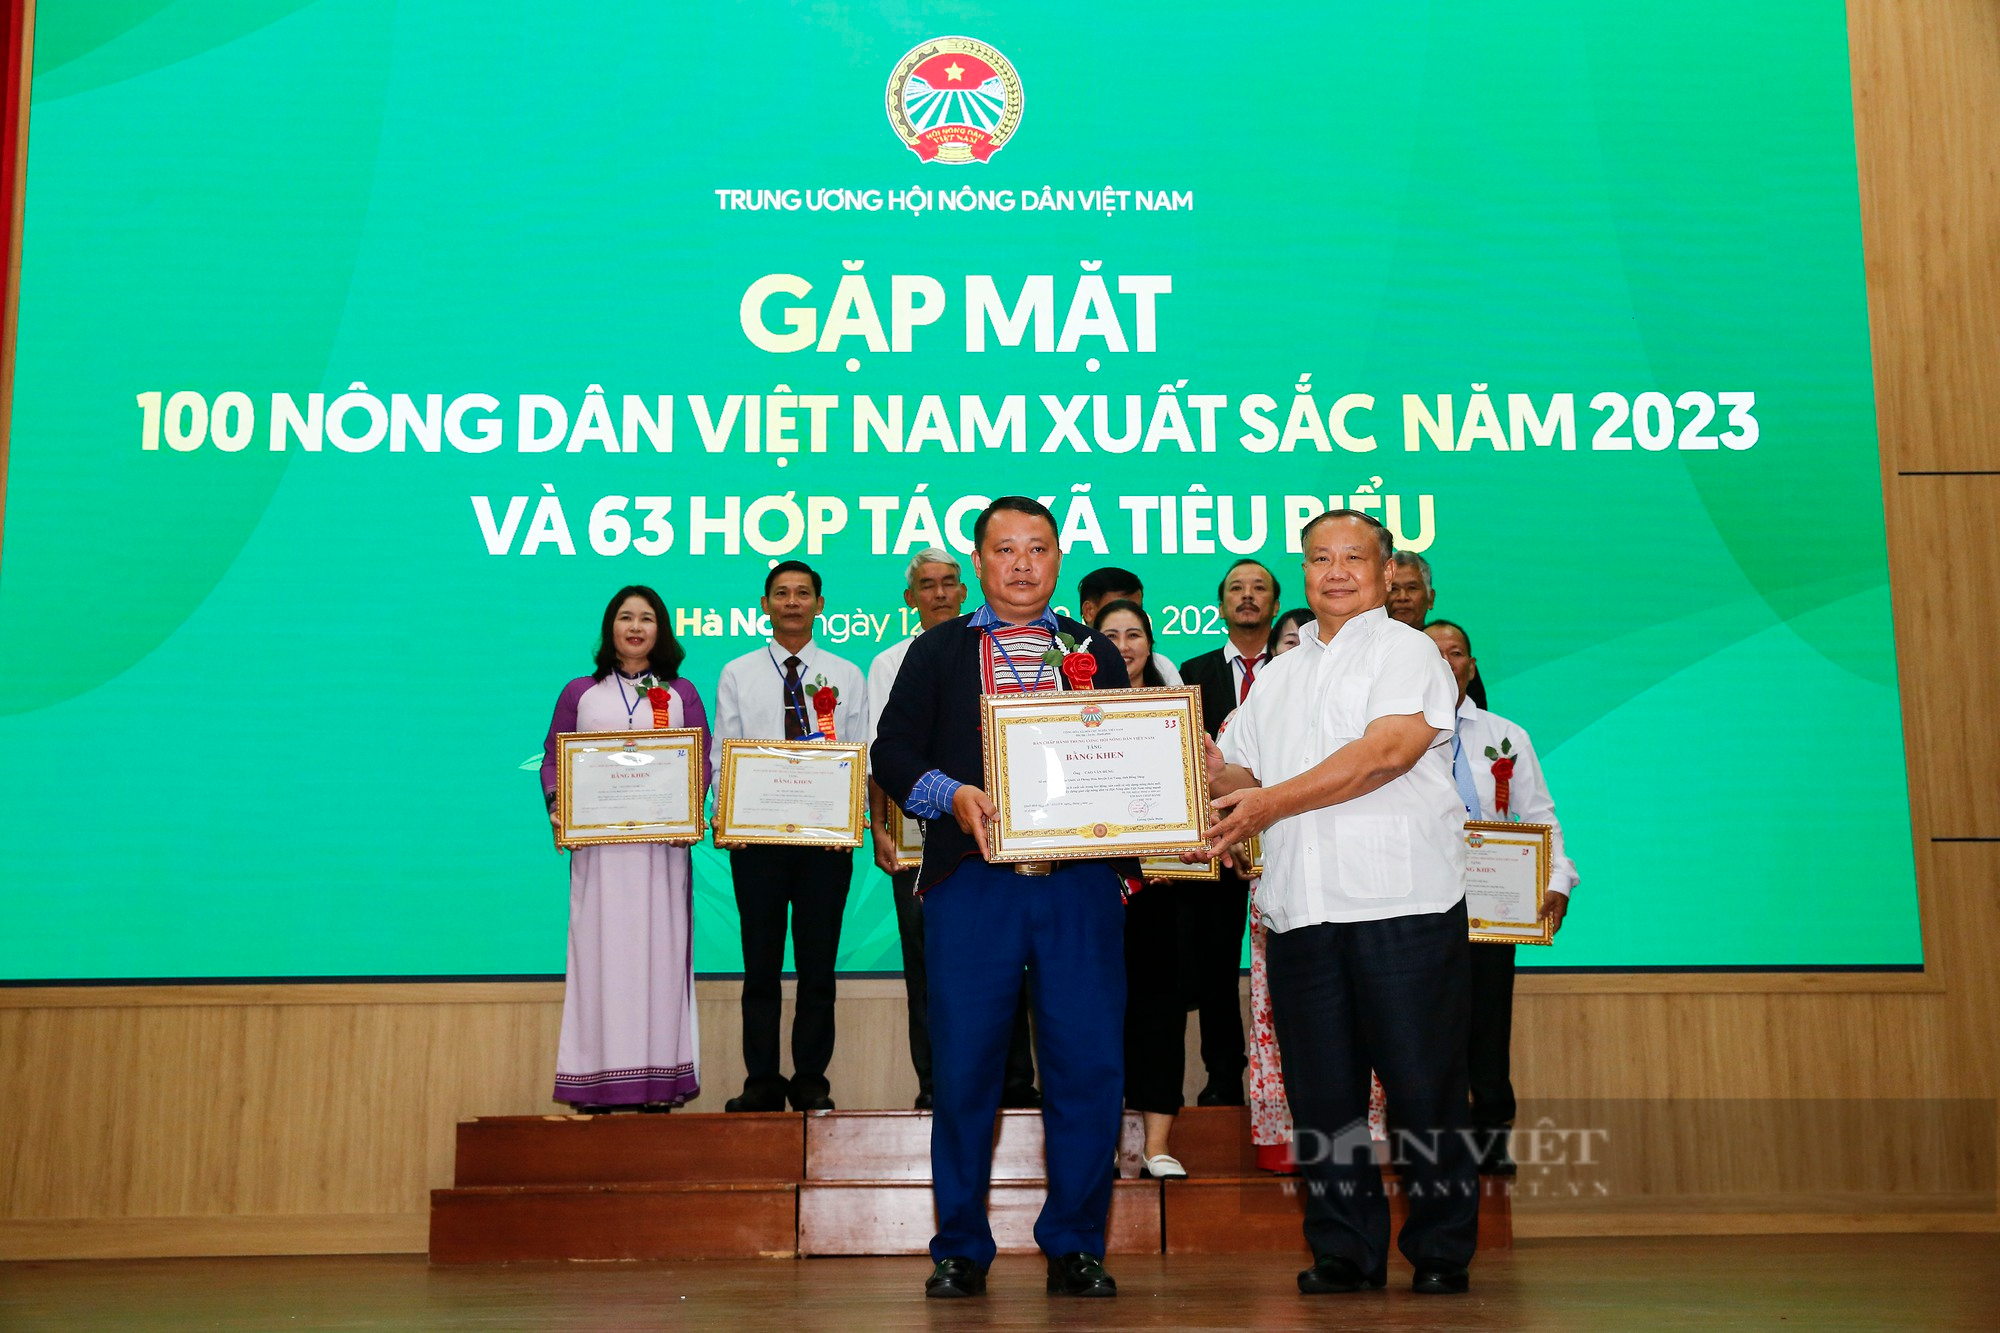 Hình ảnh 163 NDVNXS và HTX tiêu biểu 2023 nhận bằng khen từ Trung ương Hội nông dân Việt Nam - Ảnh 11.